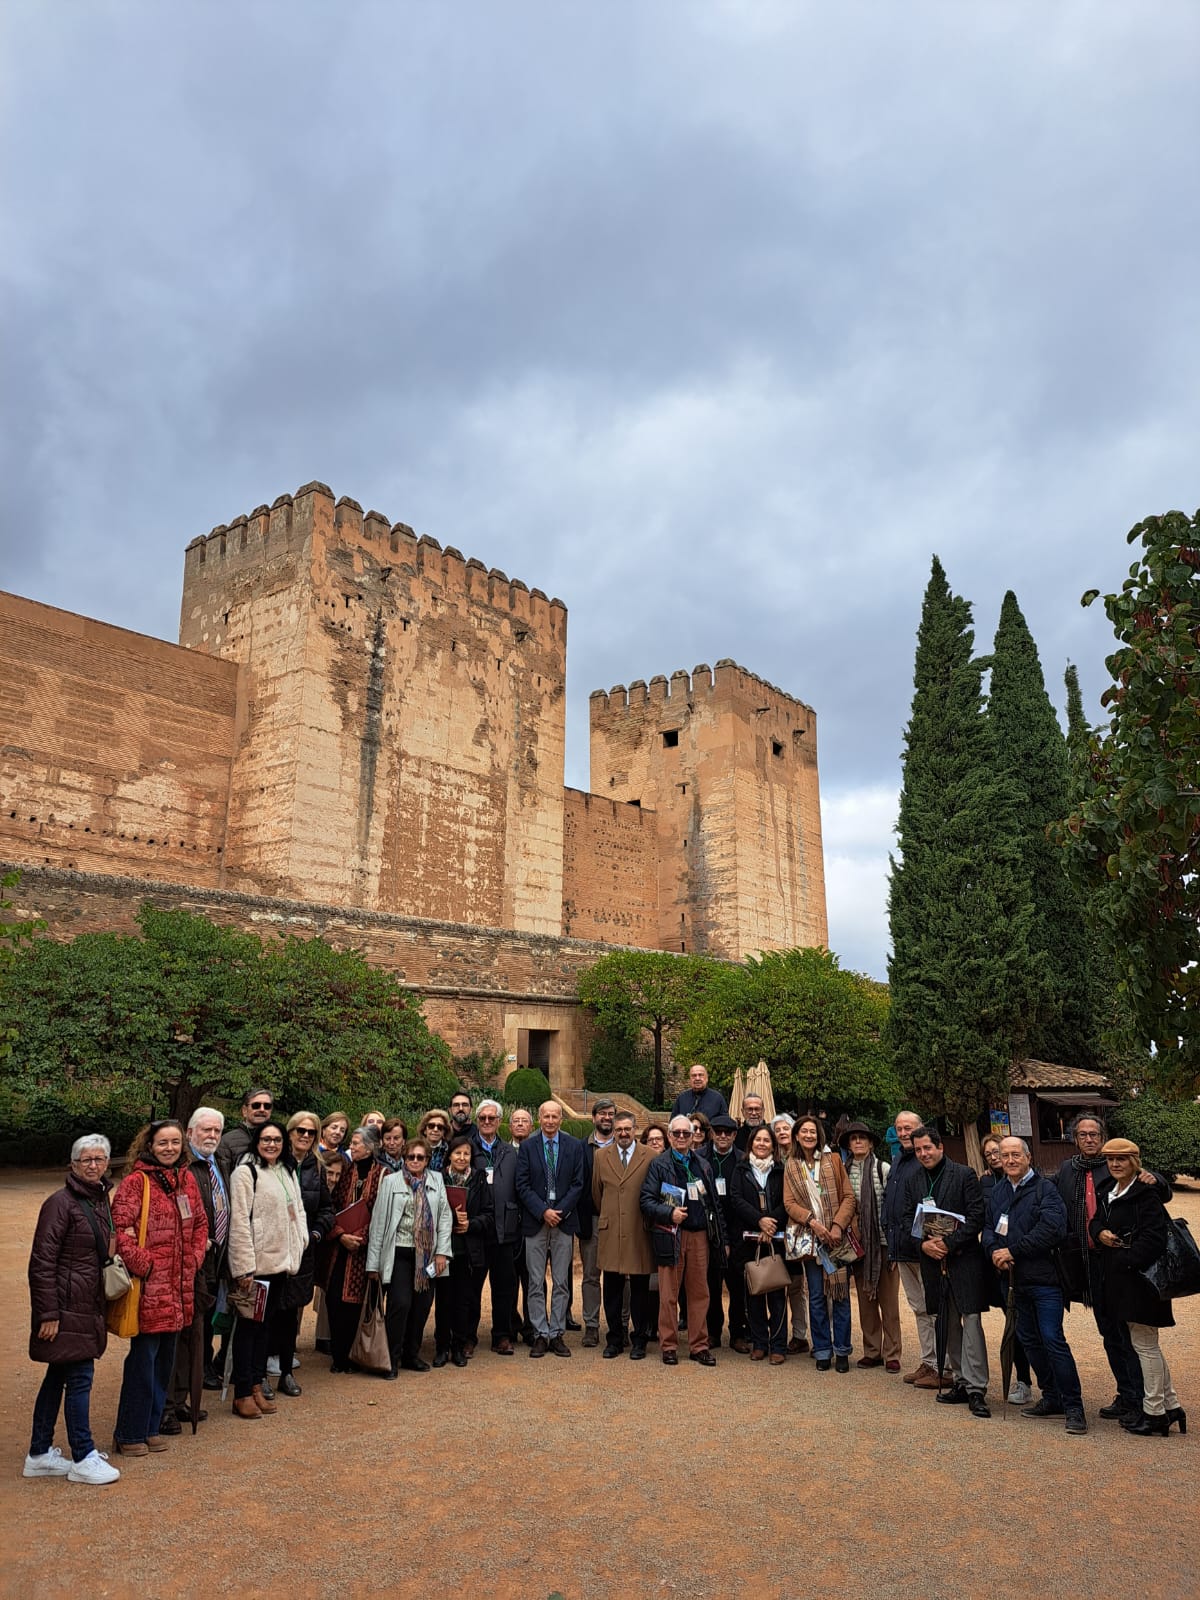 Fotografía del día andaluz de los castillos